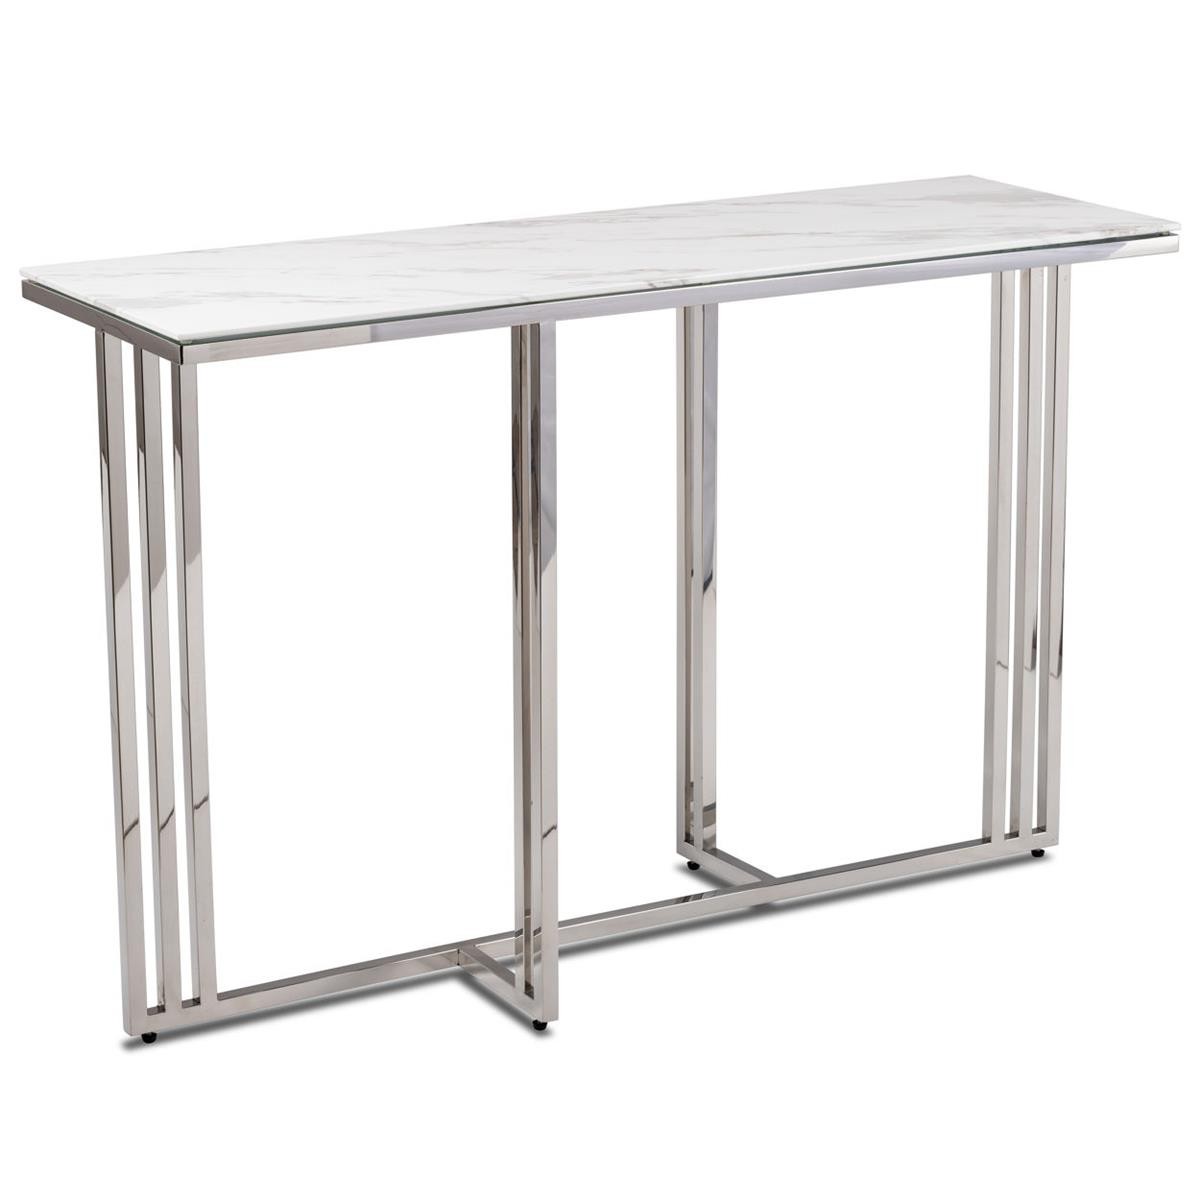 DekorStyle Konzolový stolek AMAGAT 120 cm stříbrný/bílý mramor